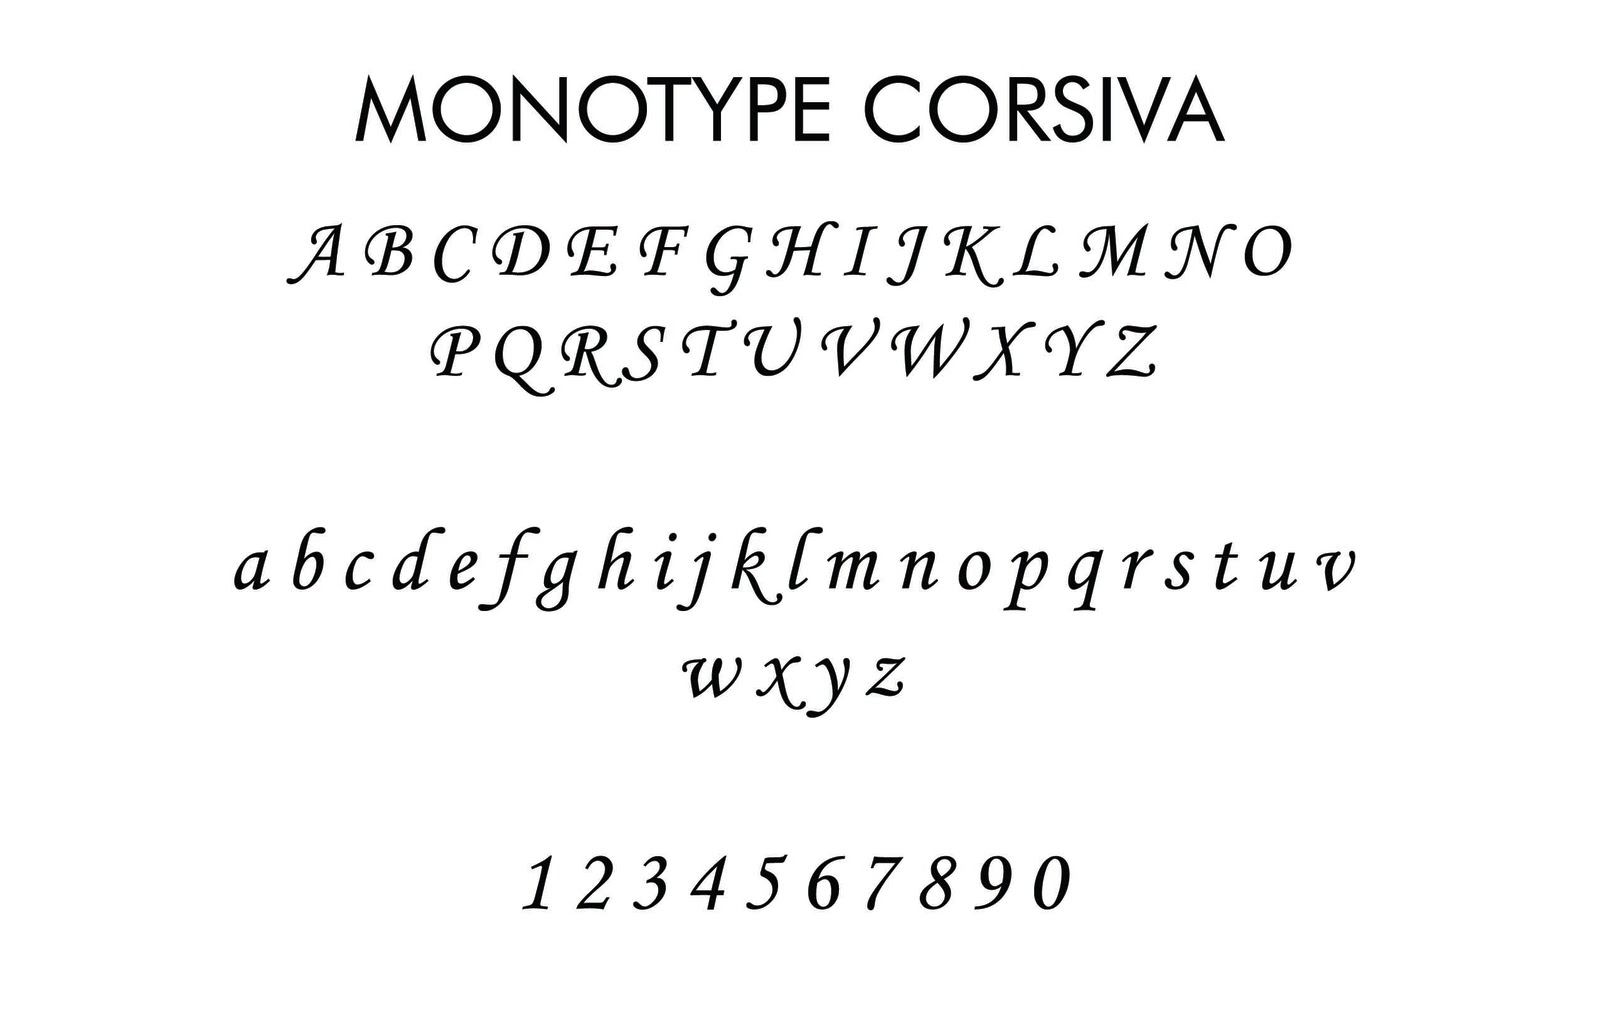 Monotype Corsiva Font Family Peatix